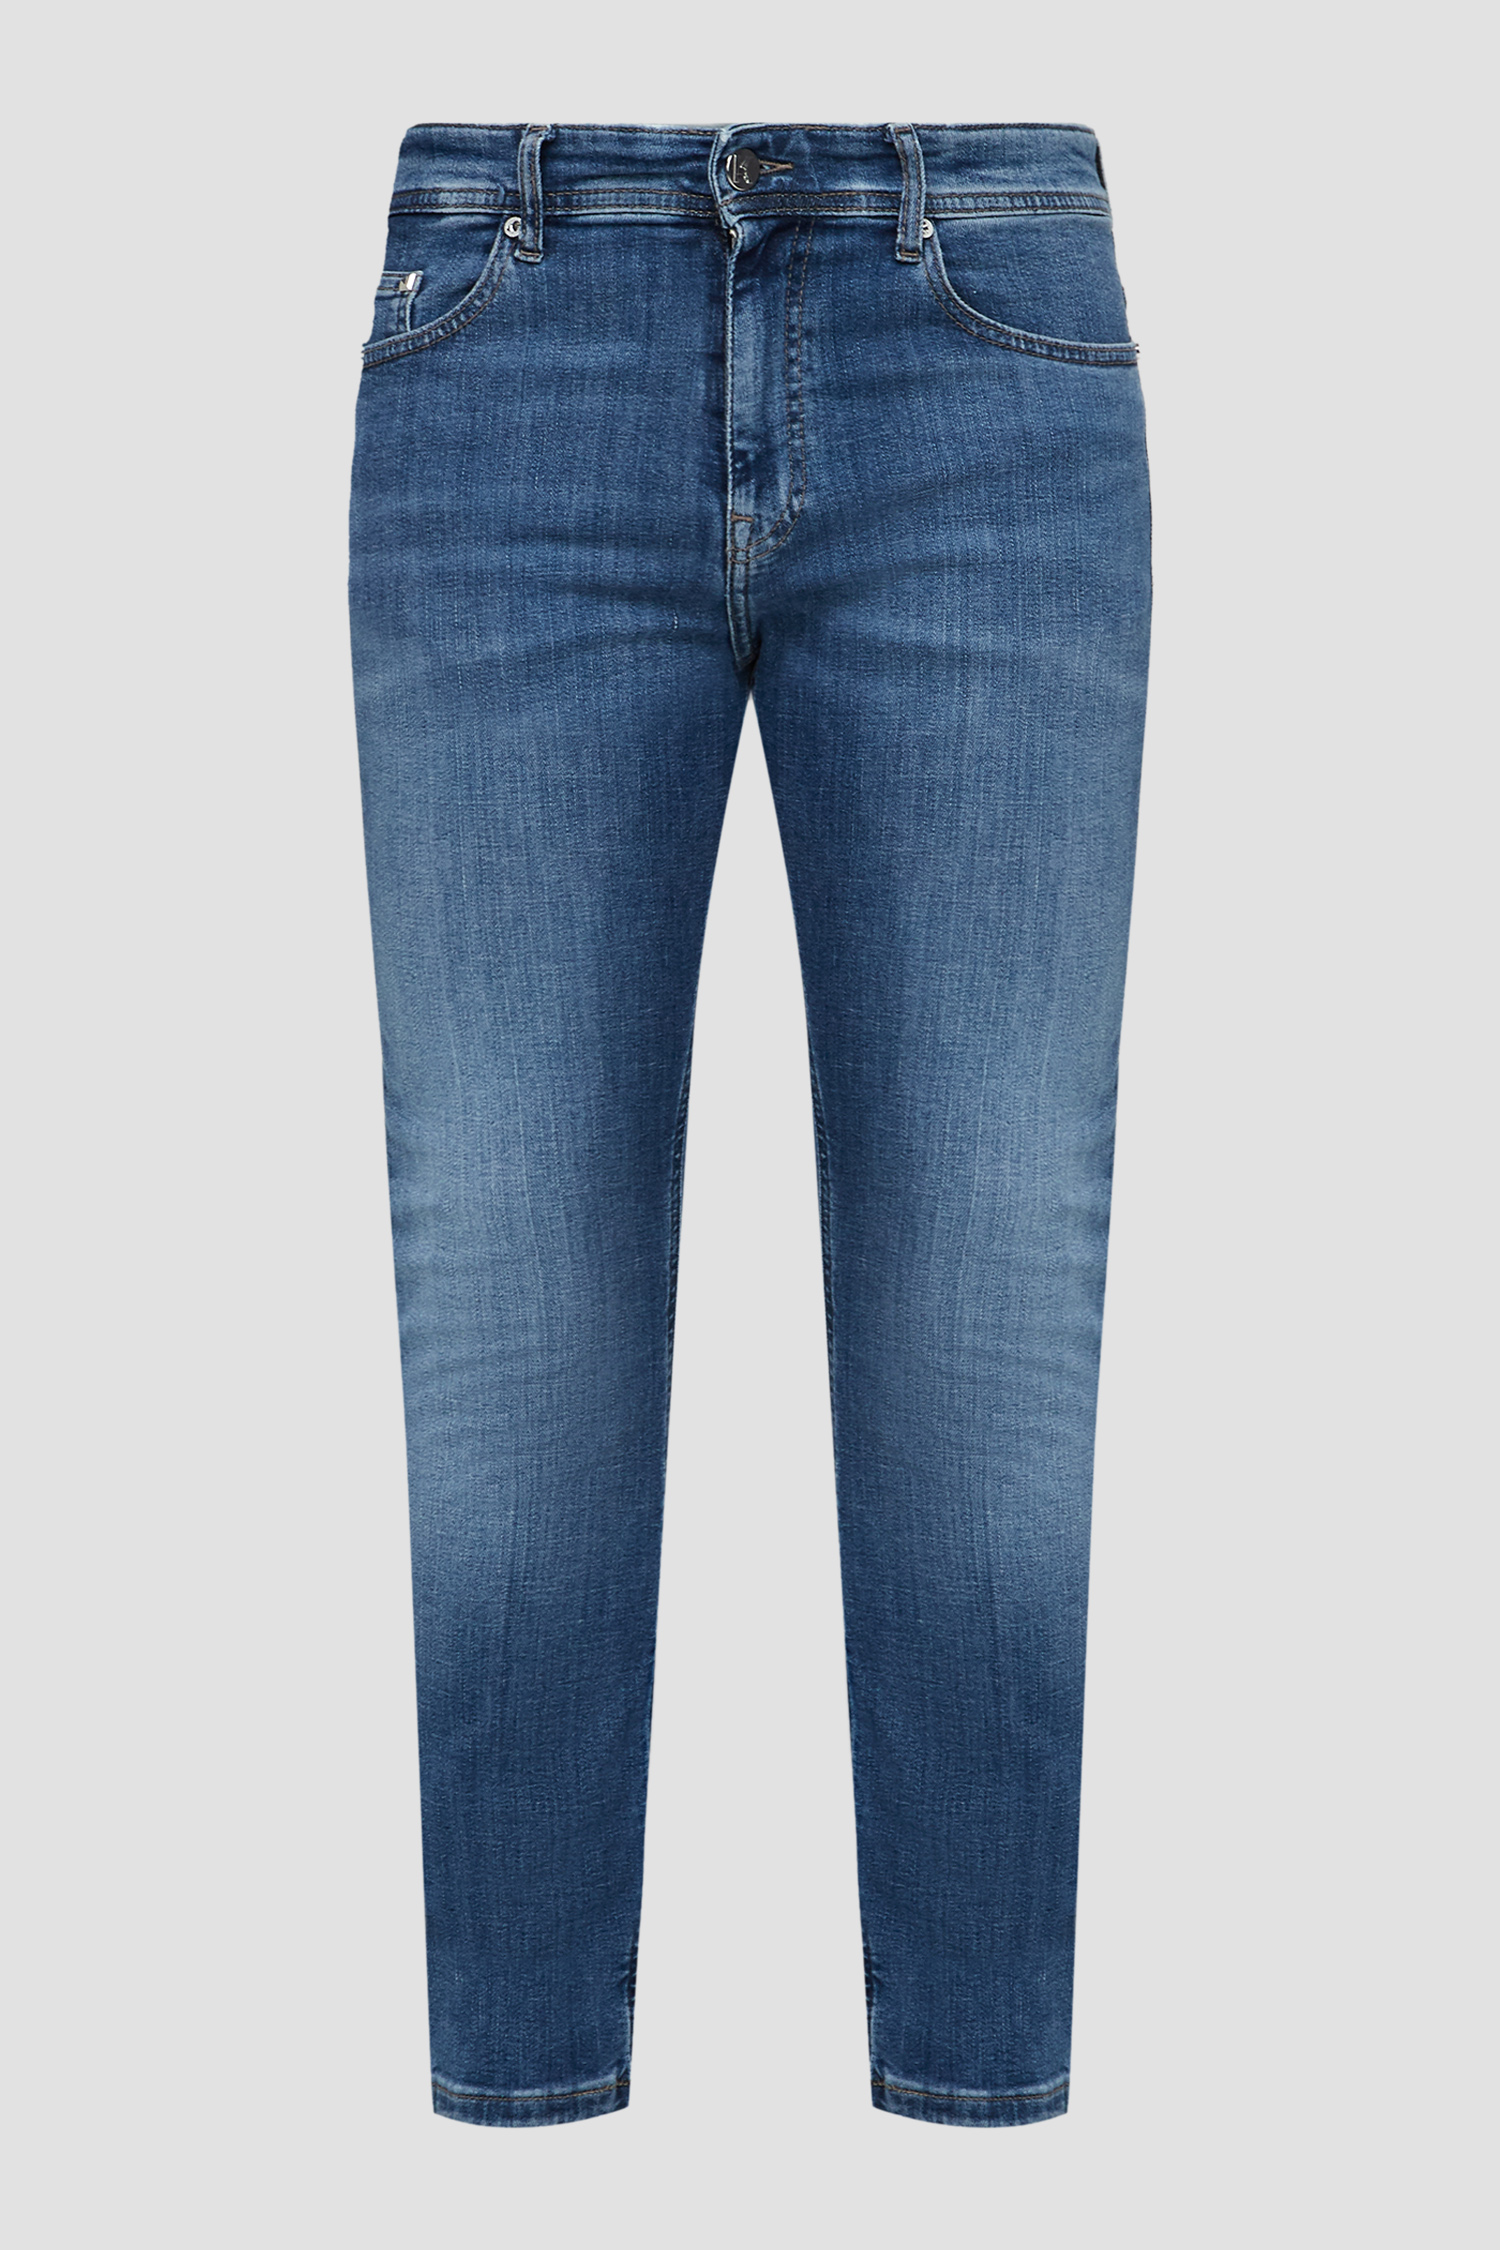 Чоловічі сині джинси Karl Lagerfeld 500830.265840;660